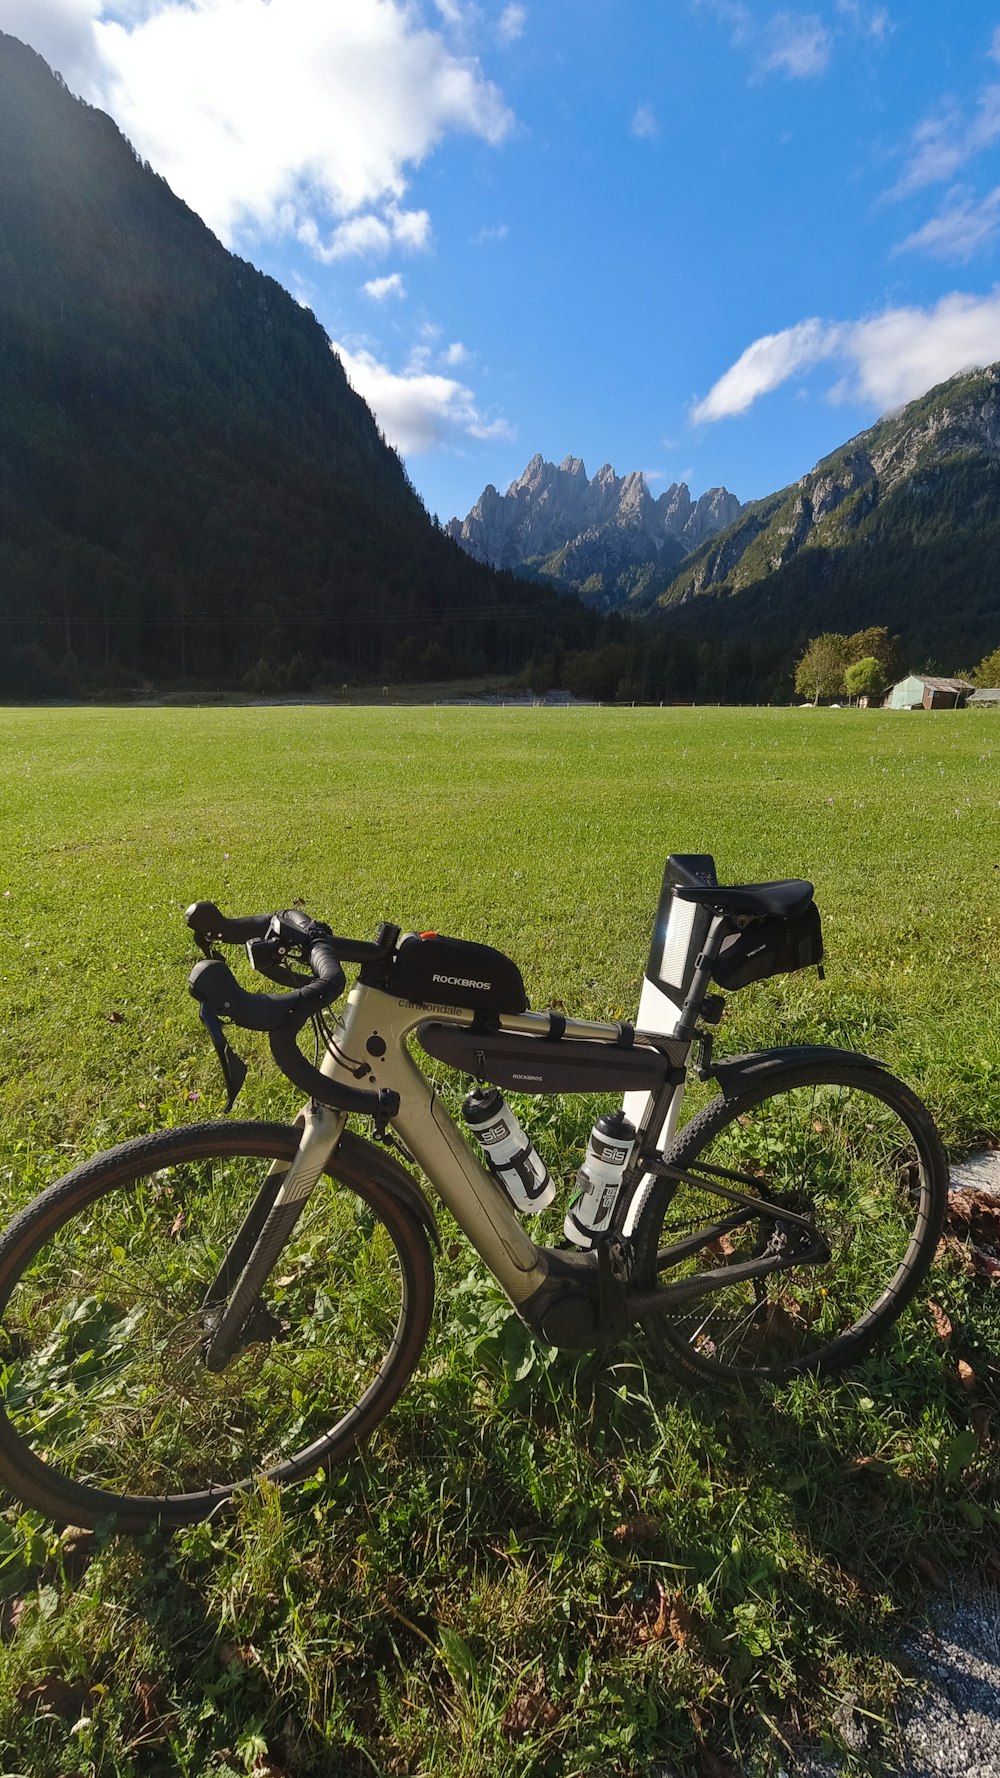 uma bicicleta estacionada na grama em frente a uma montanha